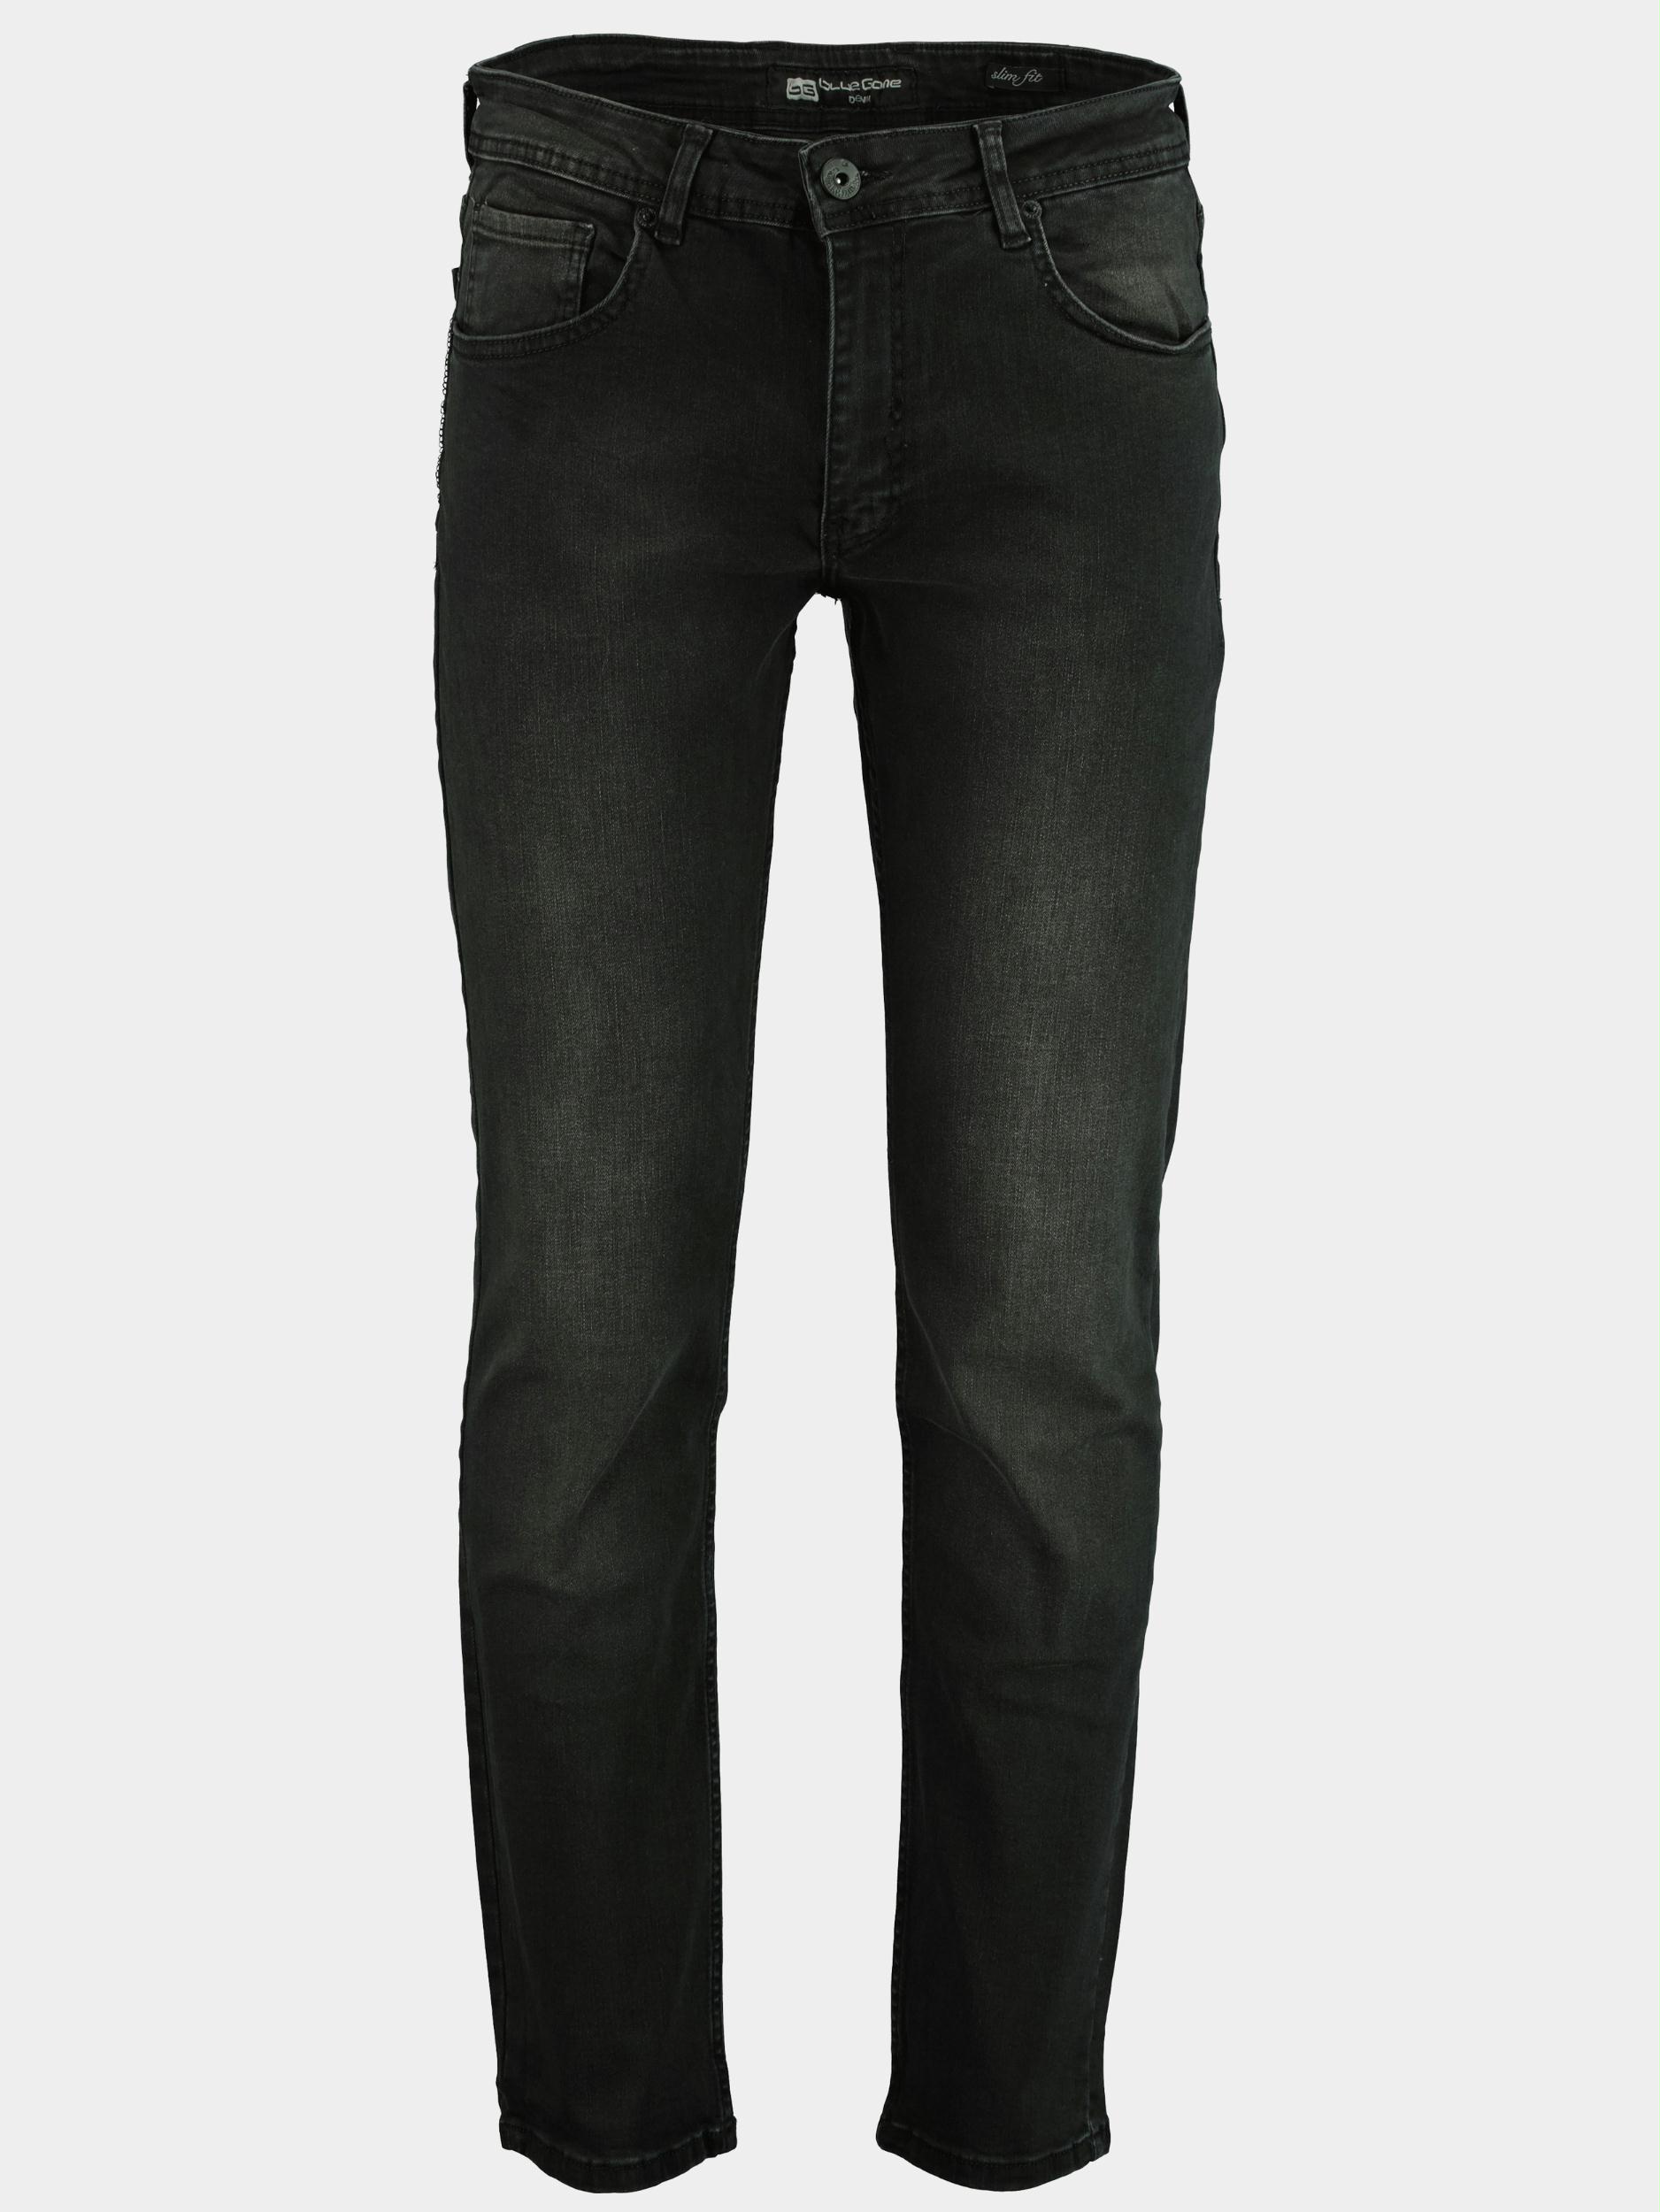 Afbeelding van Blue Game 5-pocket jeans 9002/dark grey